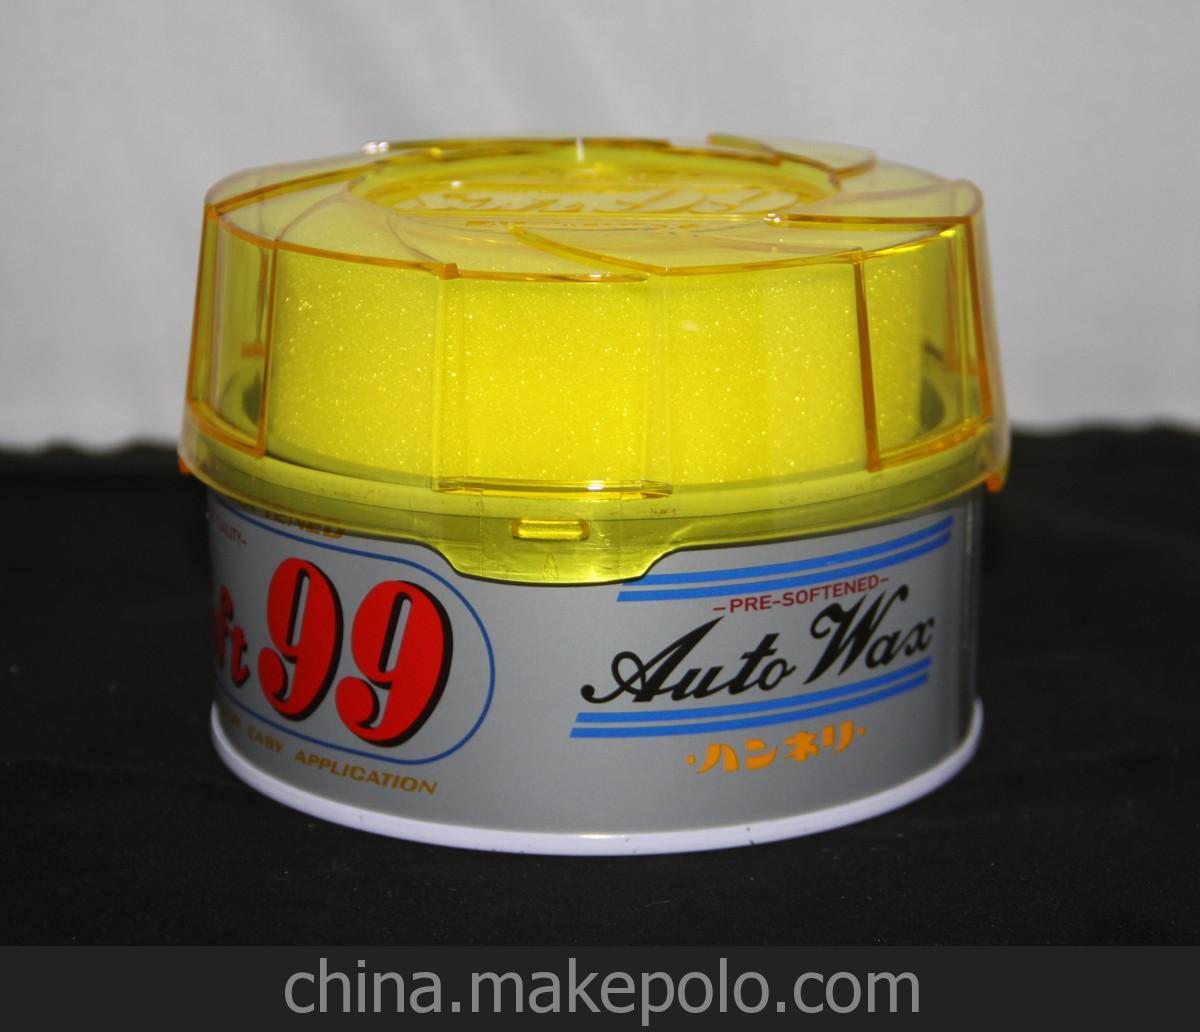 Soft99 高級軟蠟 適合于任何漆系顏色280g